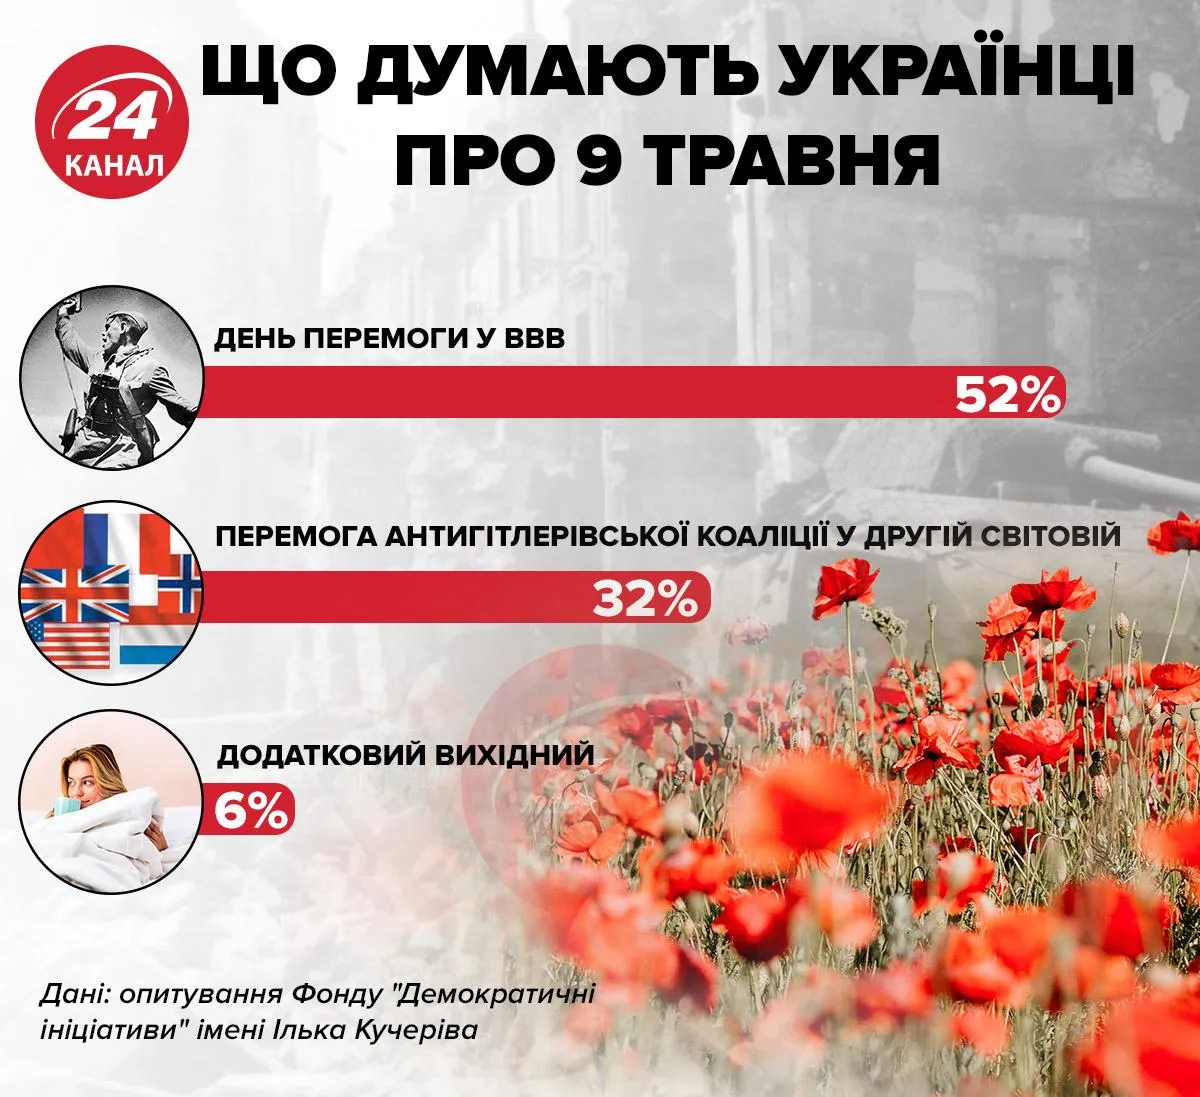 Що думають українці про 9 травня інфографіка 24 канал